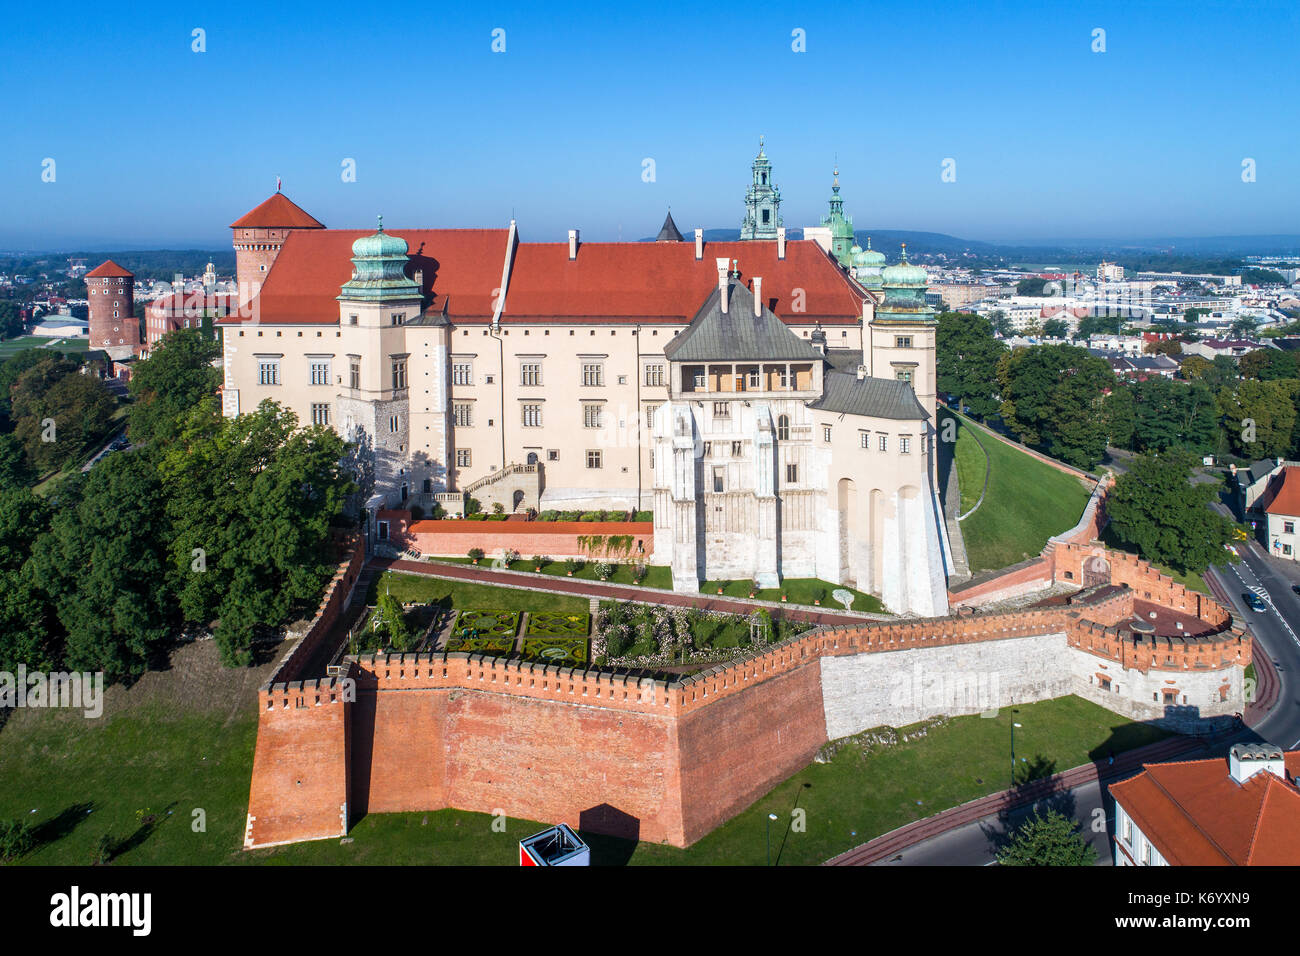 La histórica catedral y el castillo real de Wawel, en Cracovia, Polonia, con muros defensivos y un jardín. Vista aérea de la mañana. Foto de stock